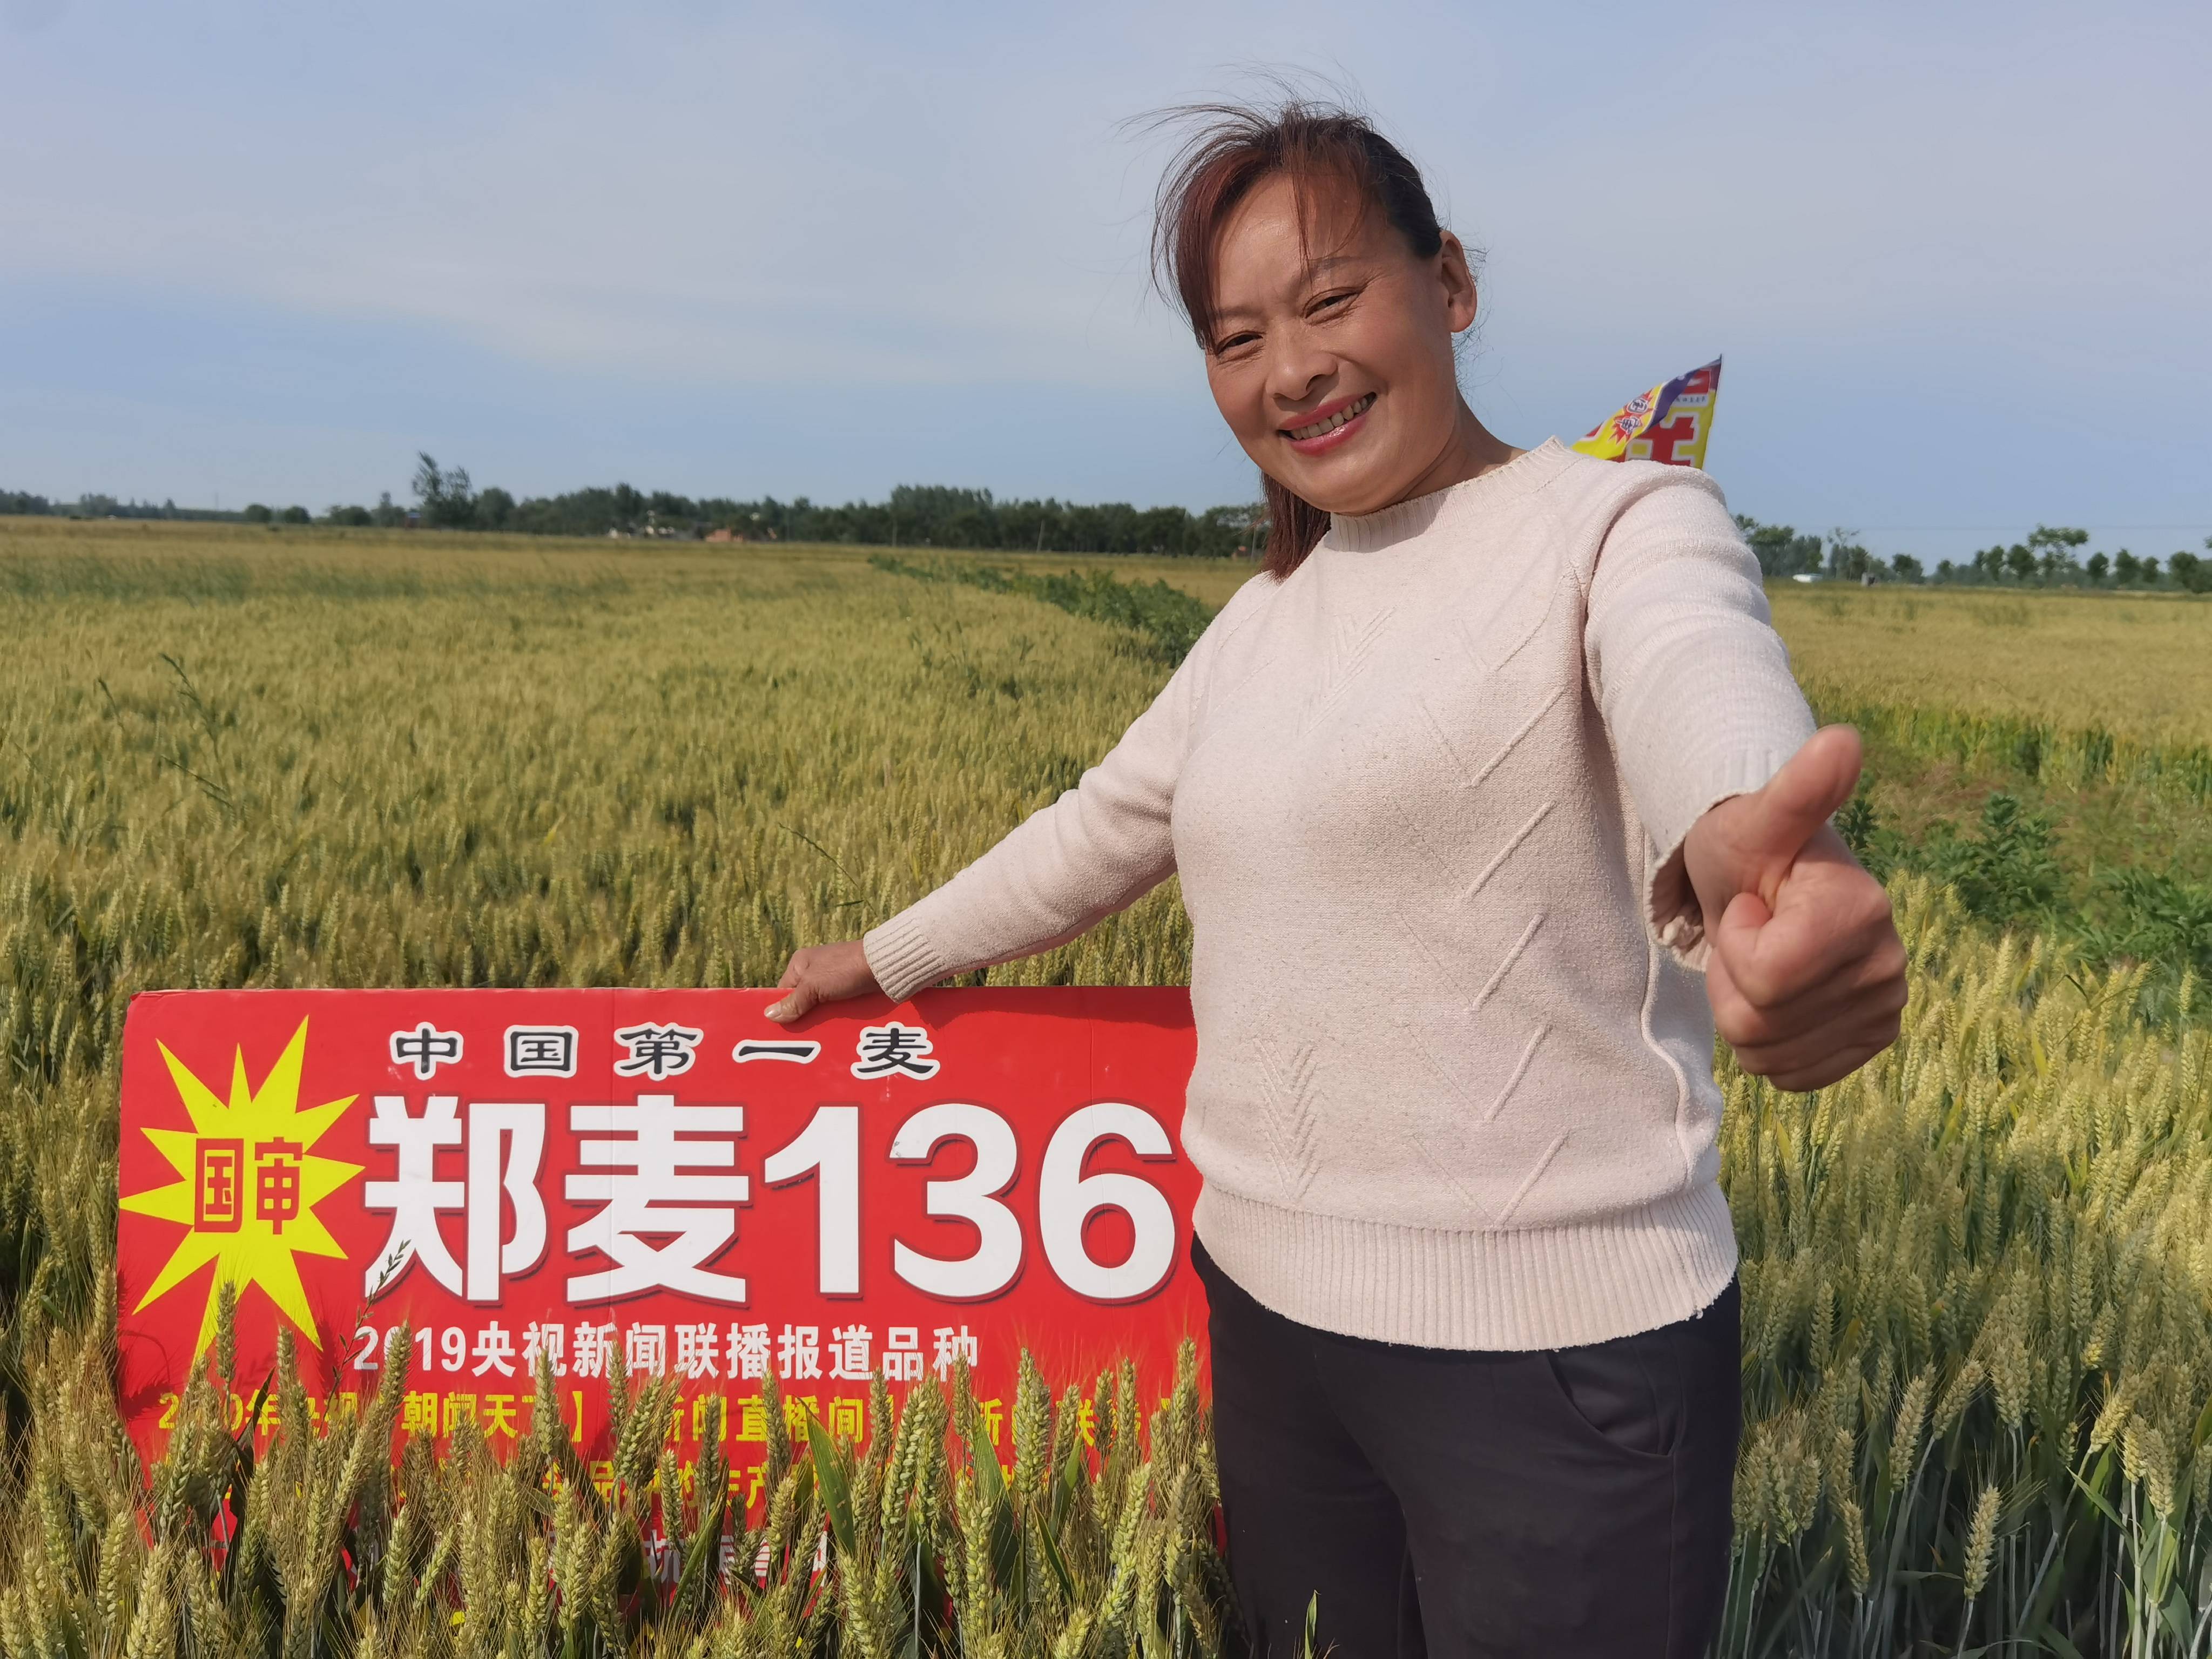 邓州云志种业在都司镇举办郑麦136农民观摩会